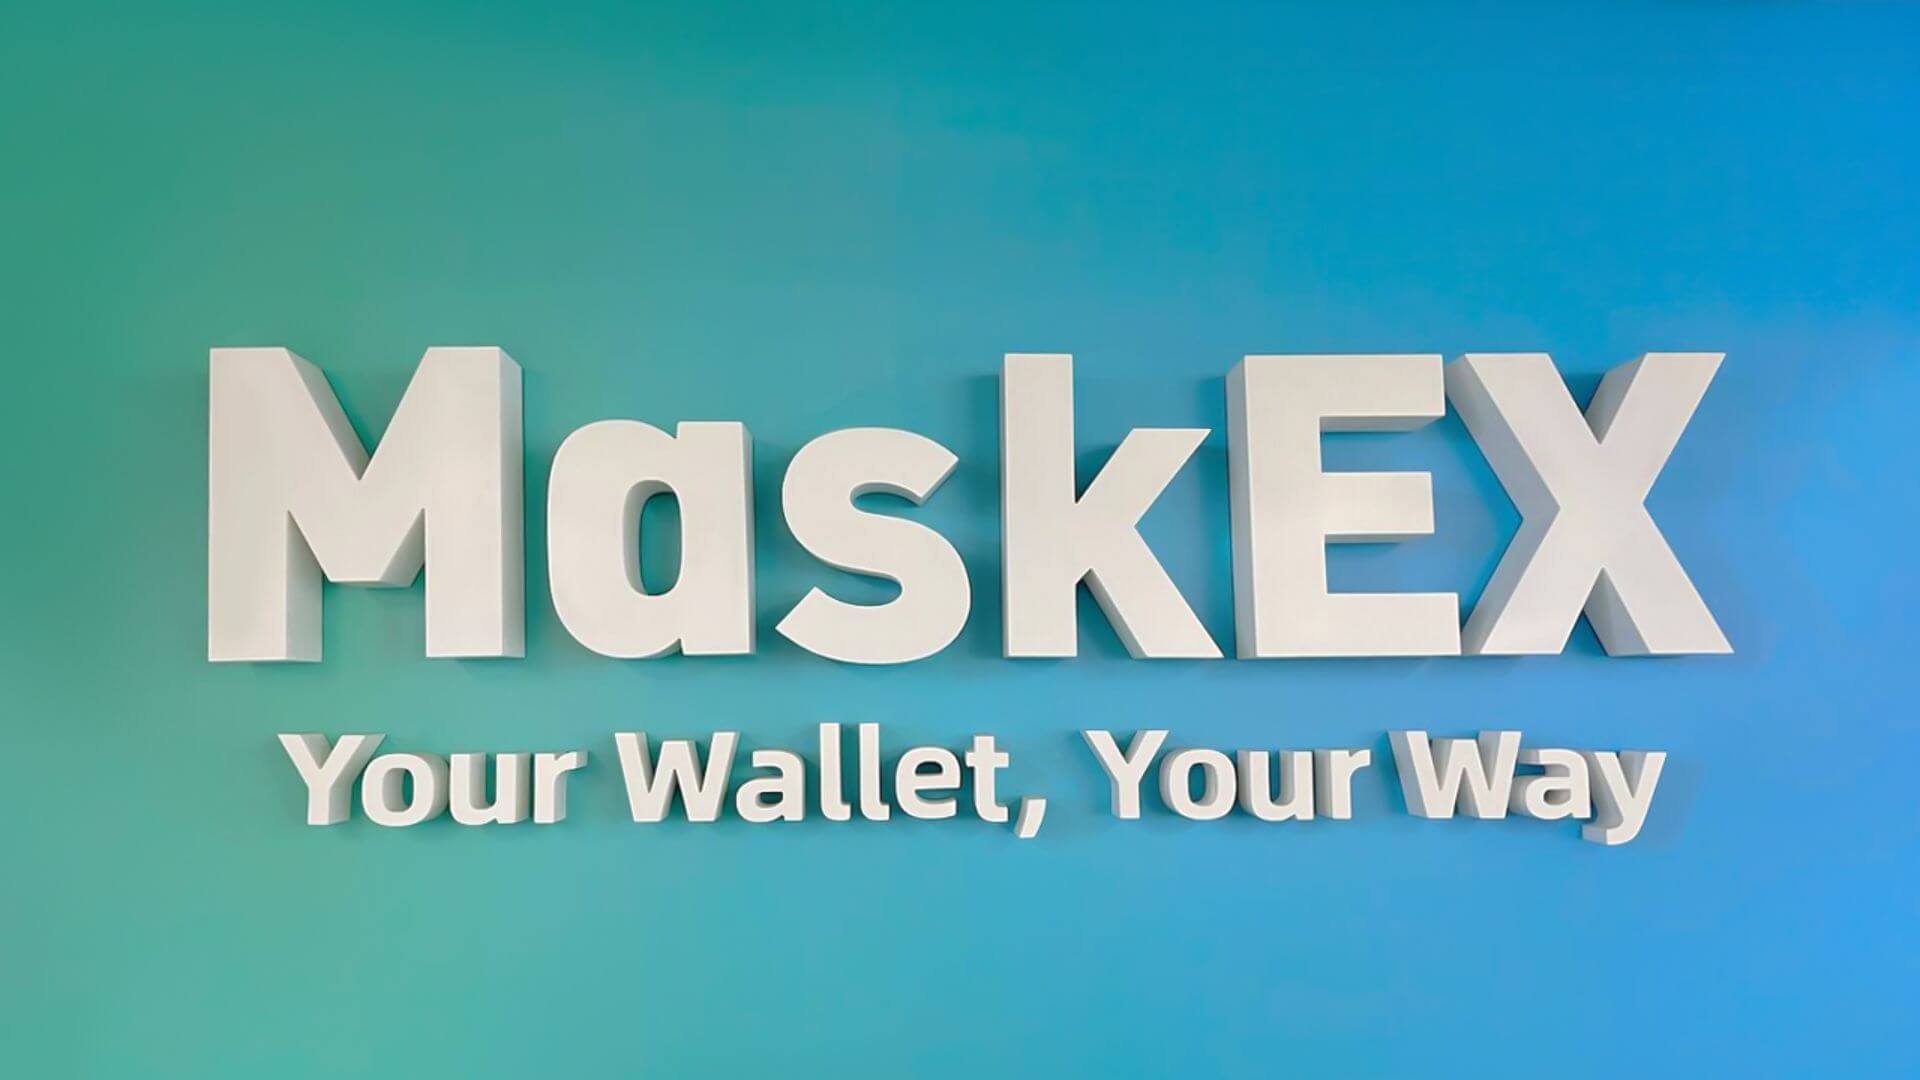 A Crypto Exchange MaskEX kezdeti jóváhagyást kap a VARA-tól az Egyesült Arab Emírségekben való bevezetésre